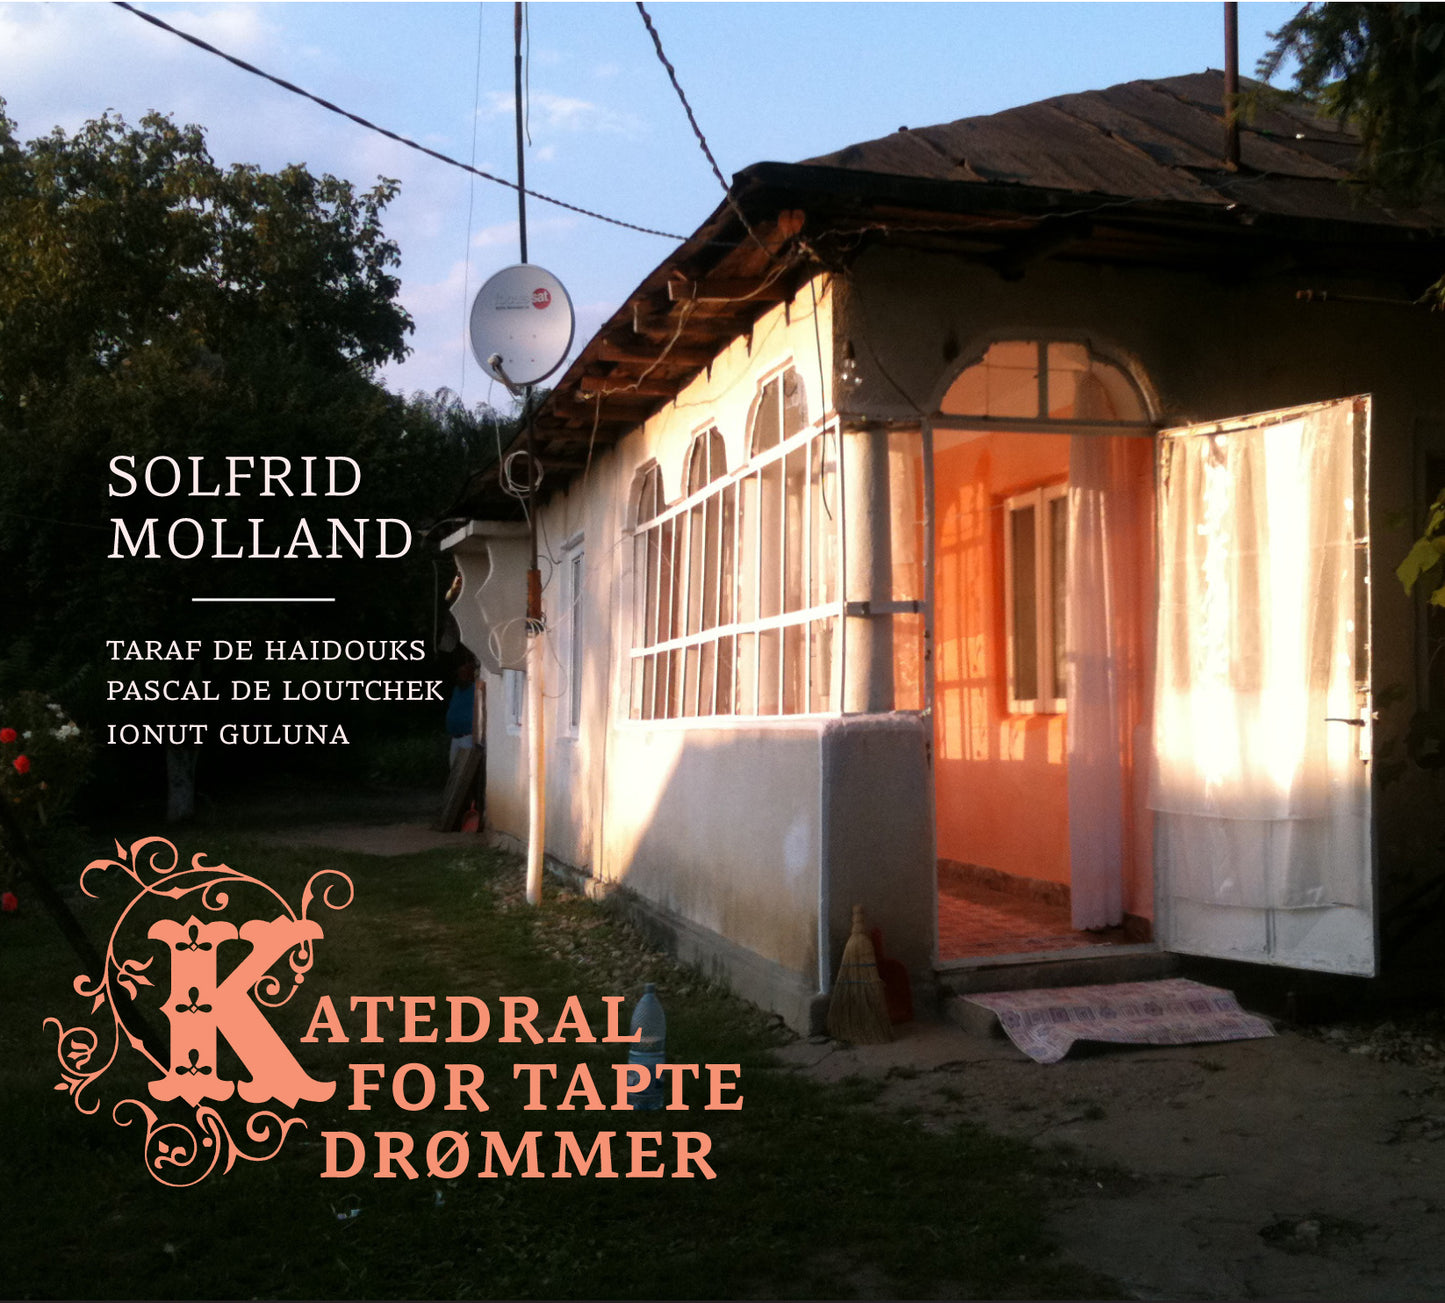 Solfrid Molland // Katedral for Tapte Drømmer // CD